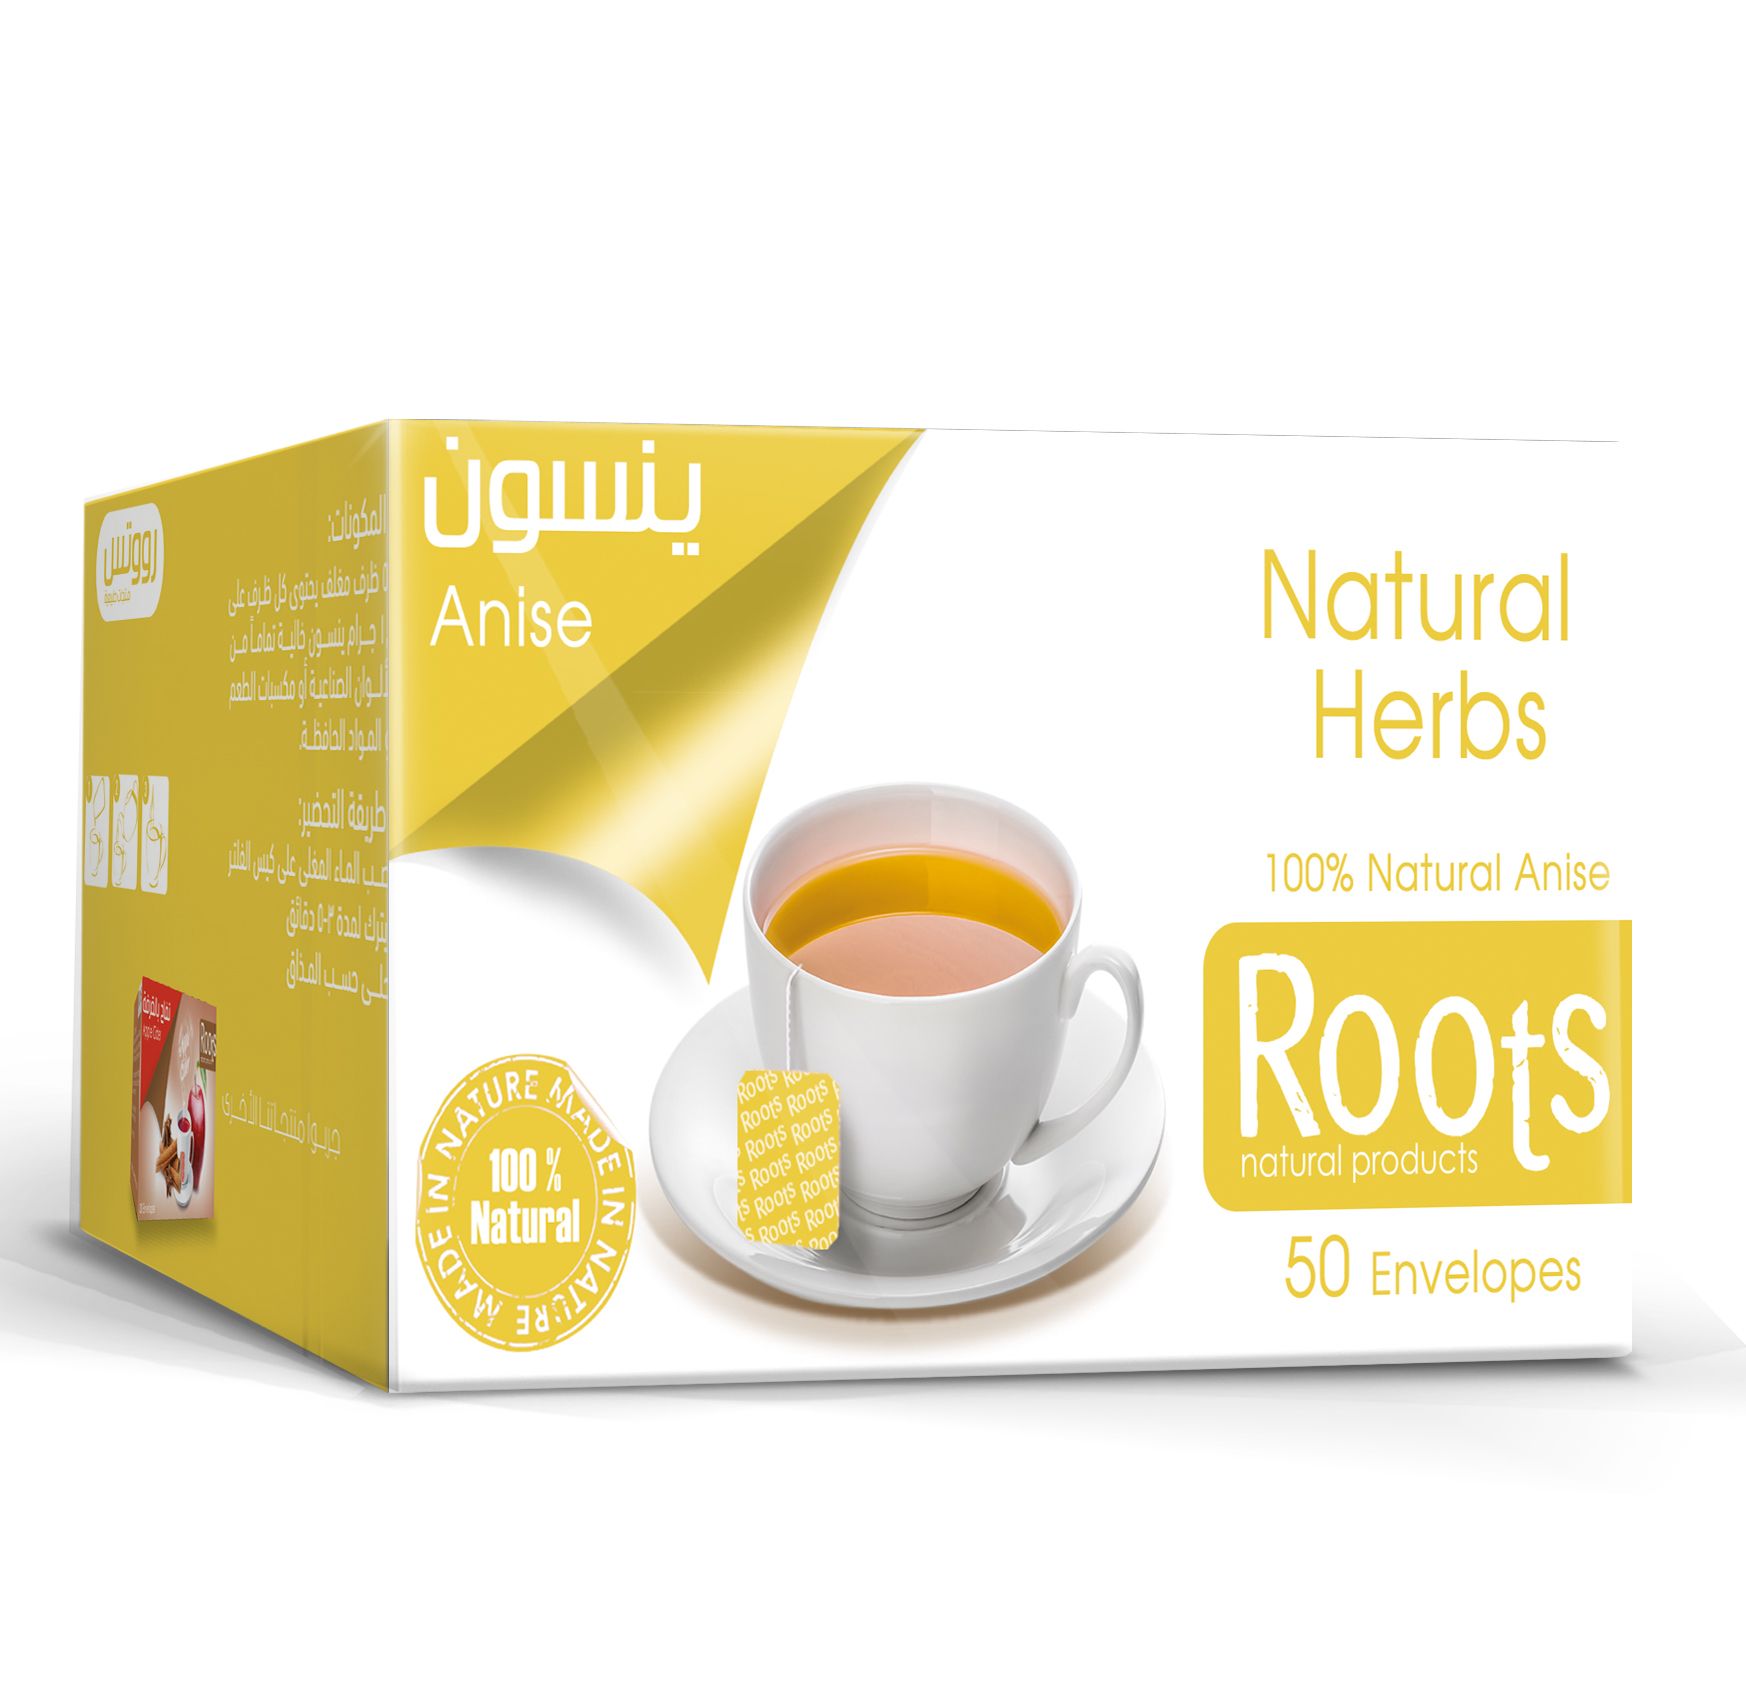 Roots Juava Juice 290 ML 6 packs